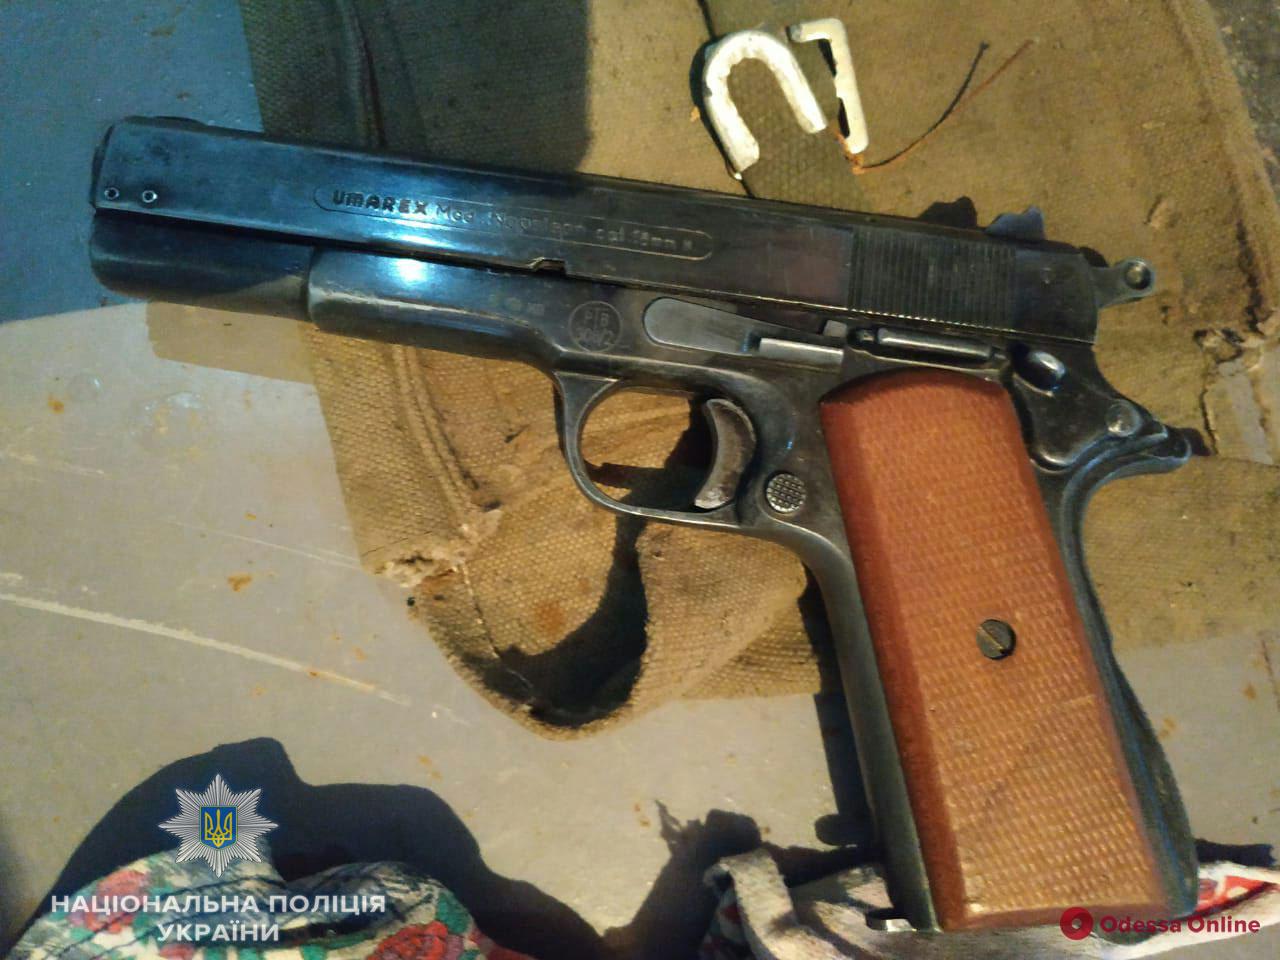 У жителя Одесской области нашли гранаты и пистолет